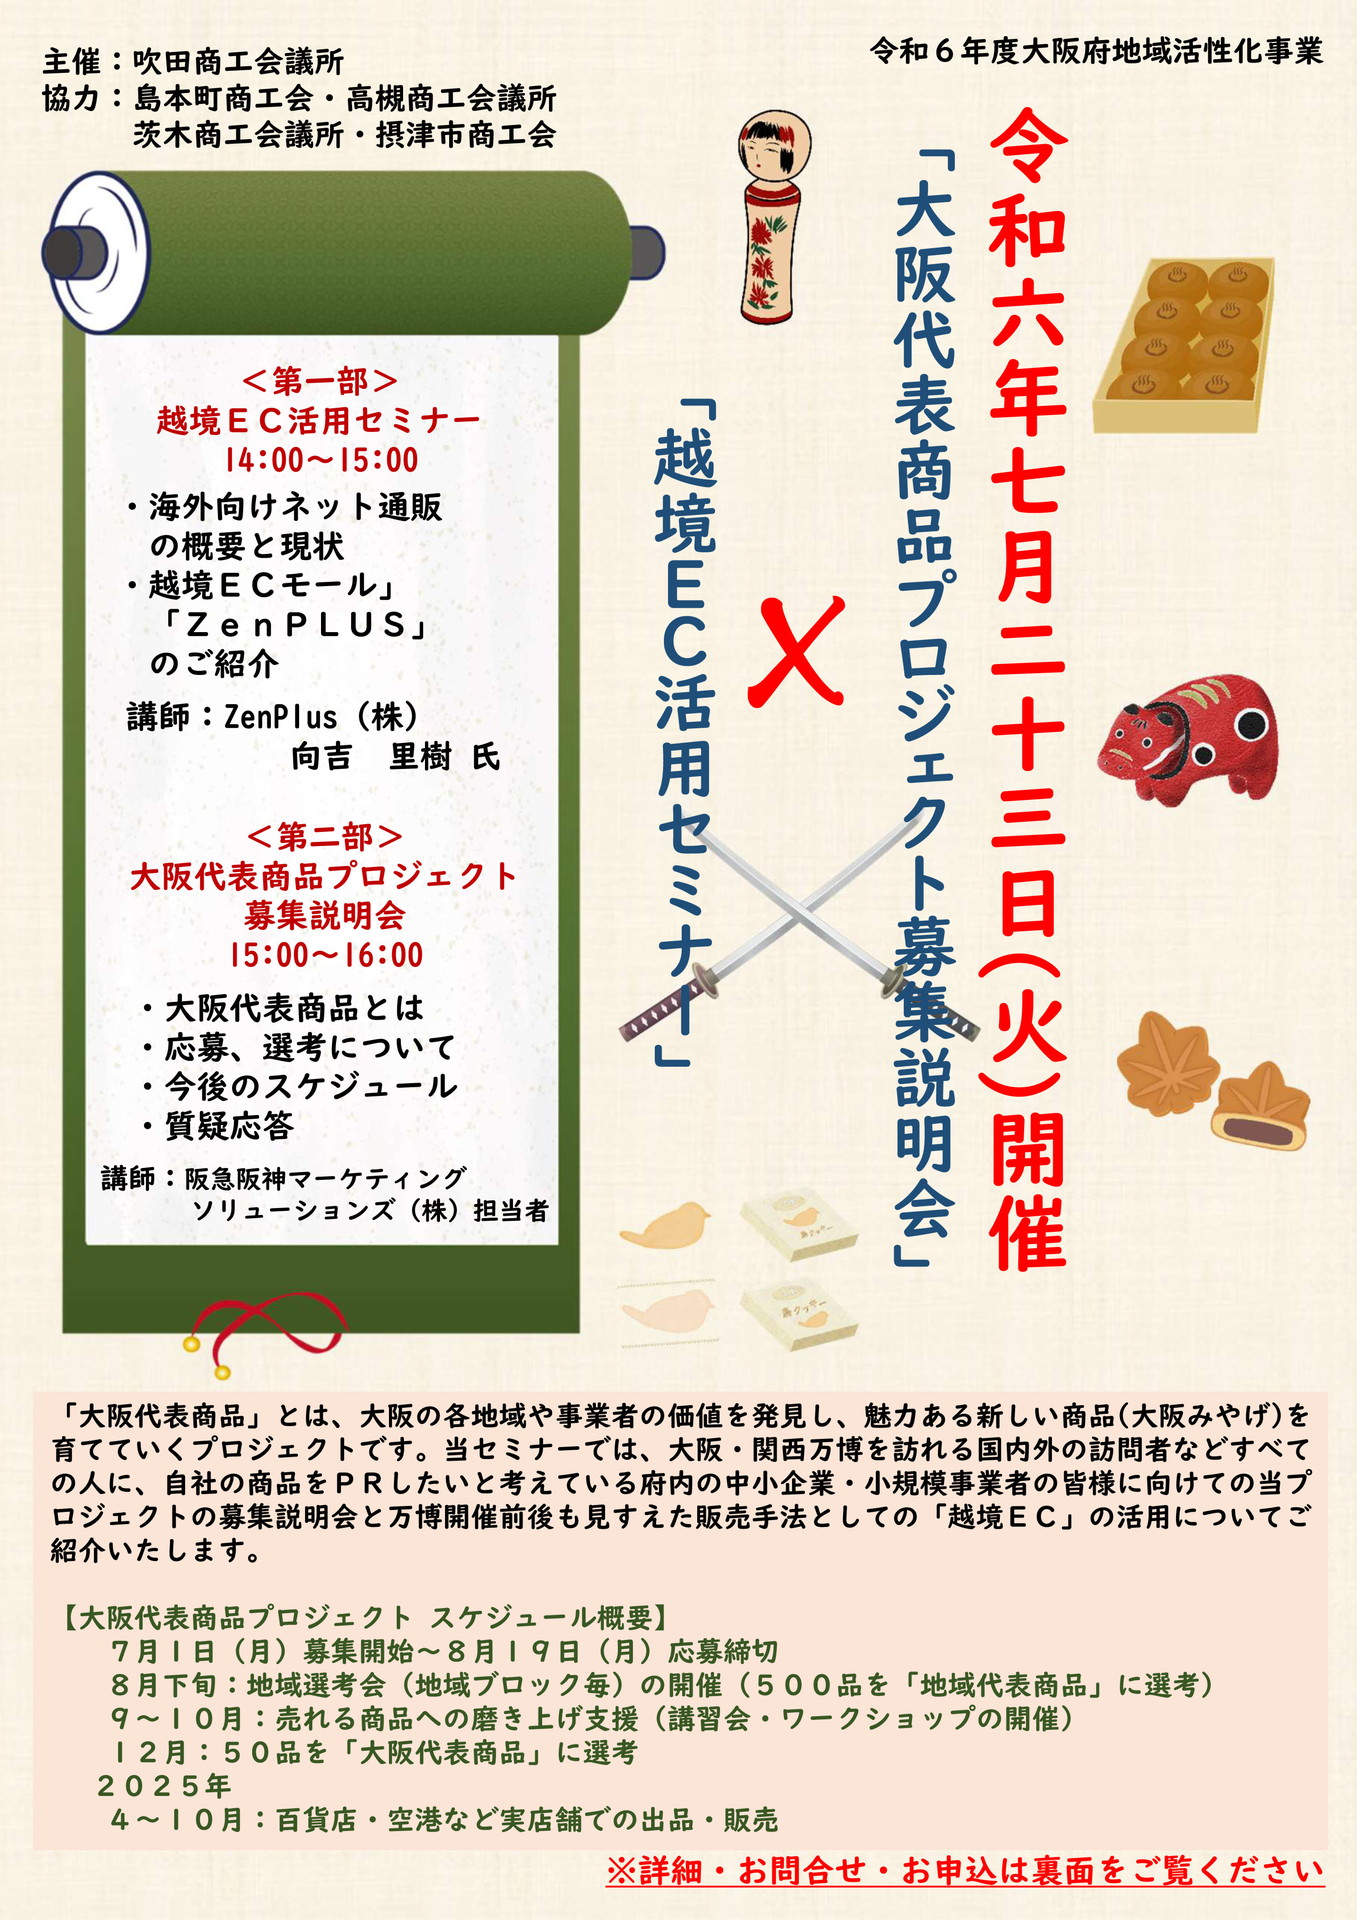 「大阪代表商品プロジェクト説明会」×「越境ＥＣ活用セミナー」(7/23)